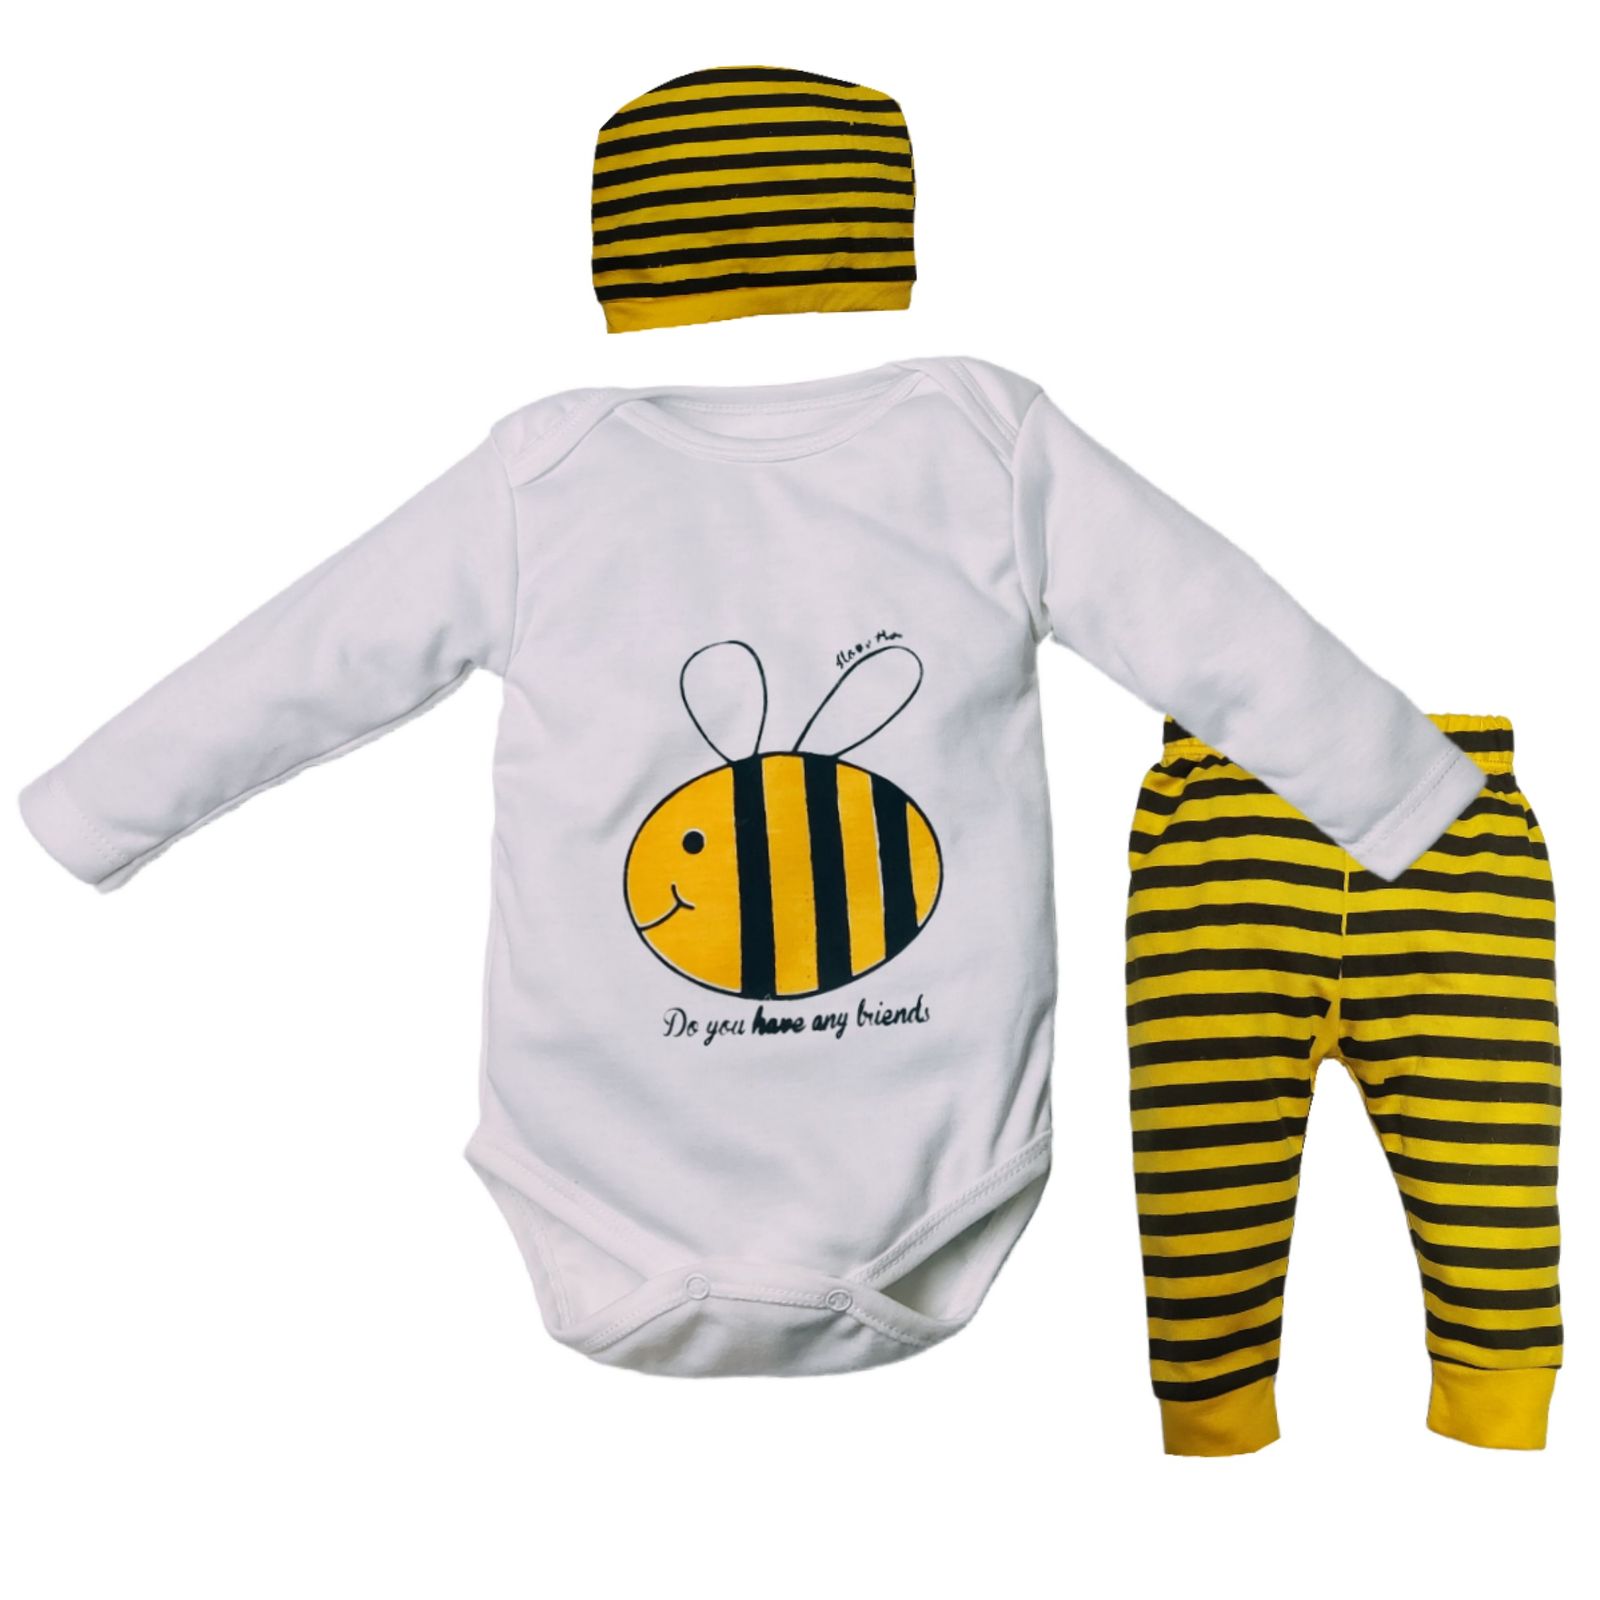 ست 3 تکه لباس نوزادی مدل زنبور کد M10 -  - 4